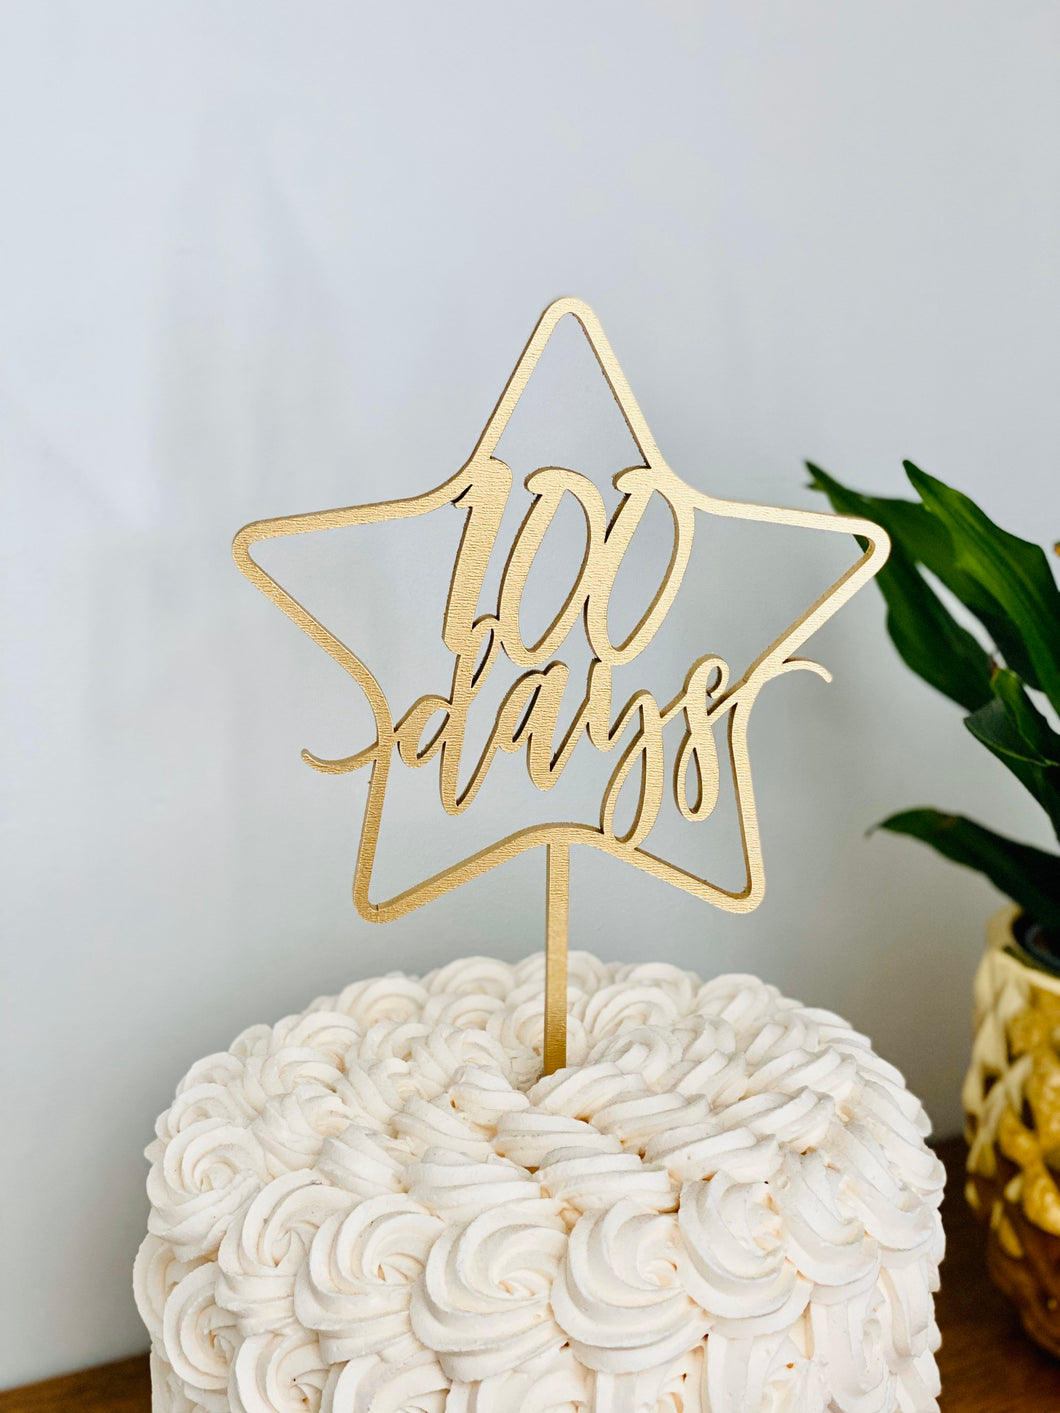 100 Days Star Cake Topper, 5.5